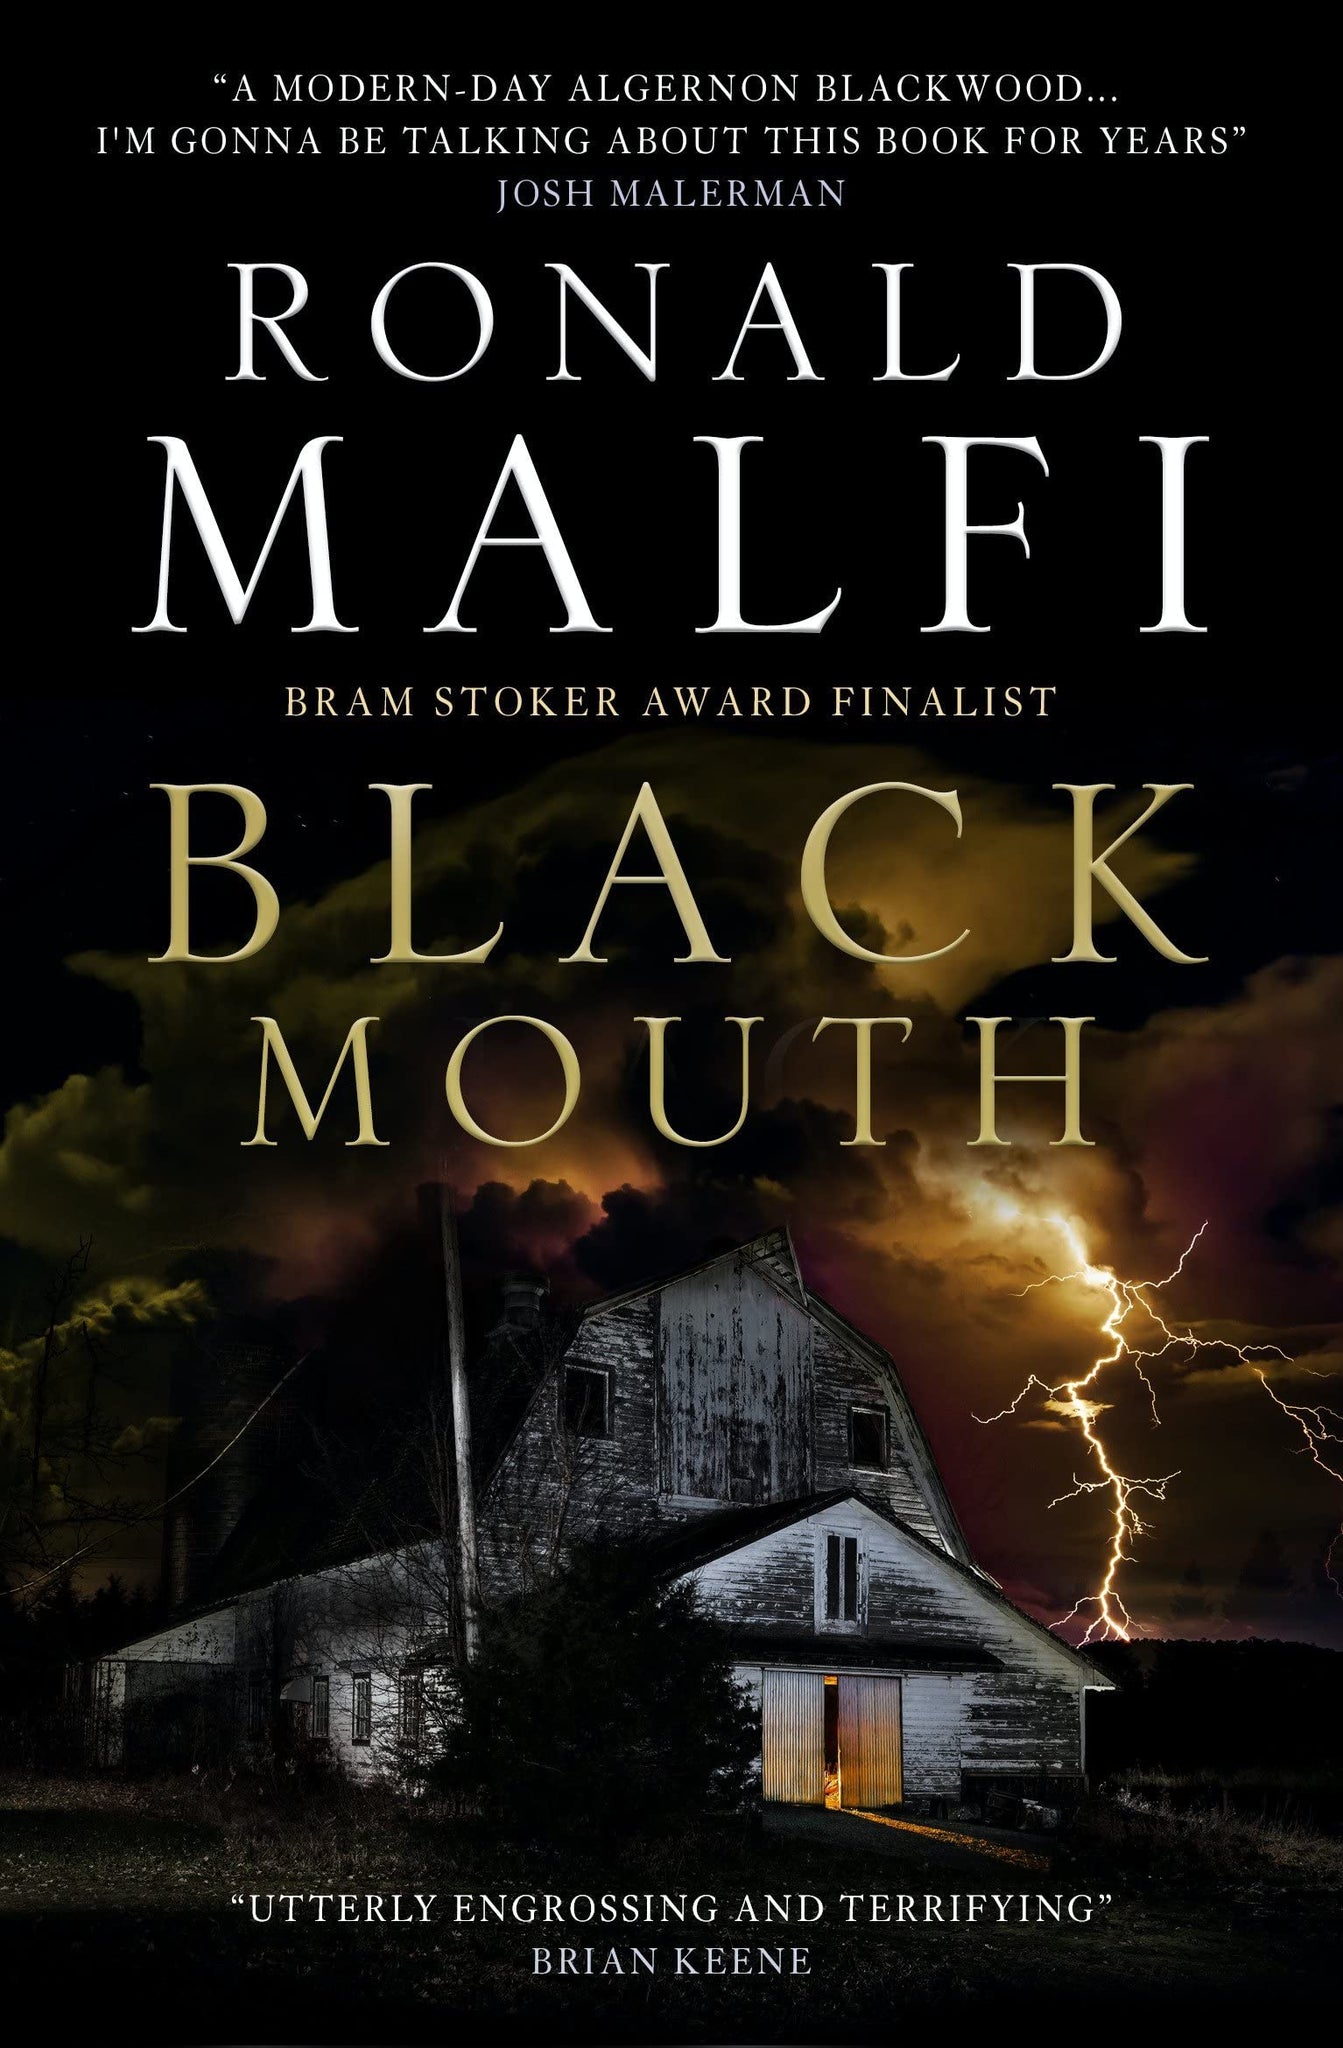 Black Mouth by Ronald Malfi